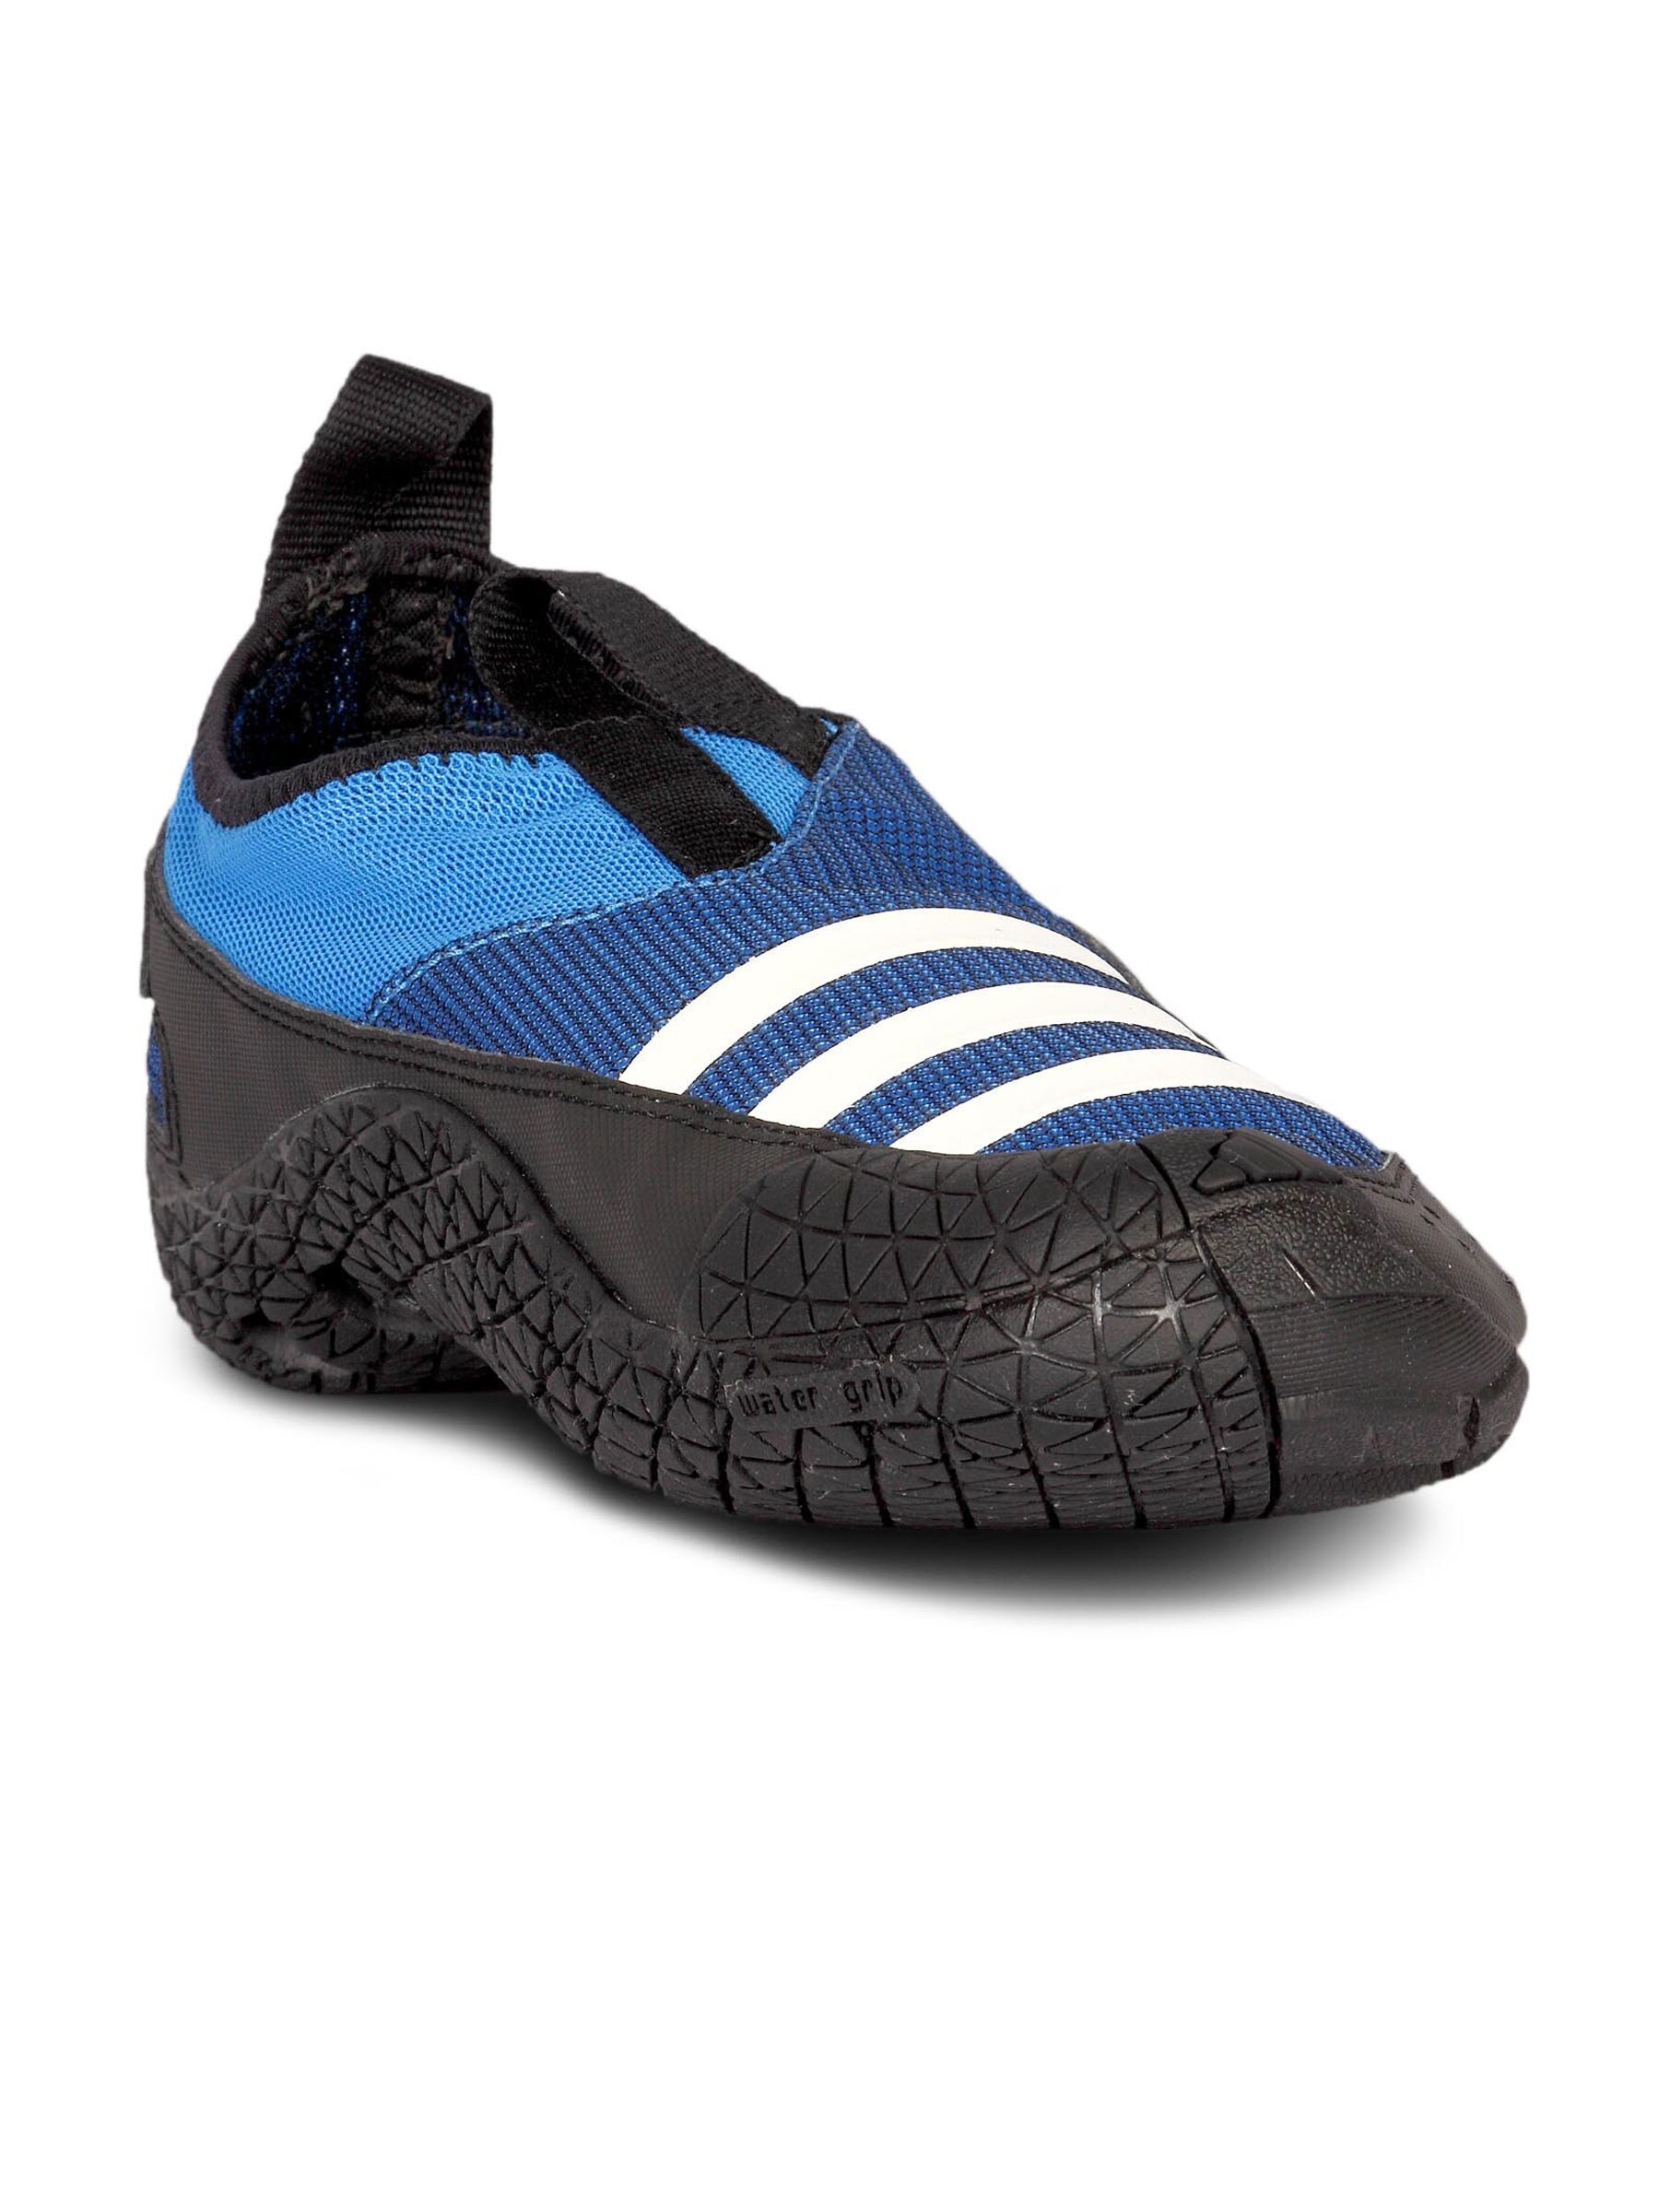 ADIDAS Men's Jawpaw Blue Shoe